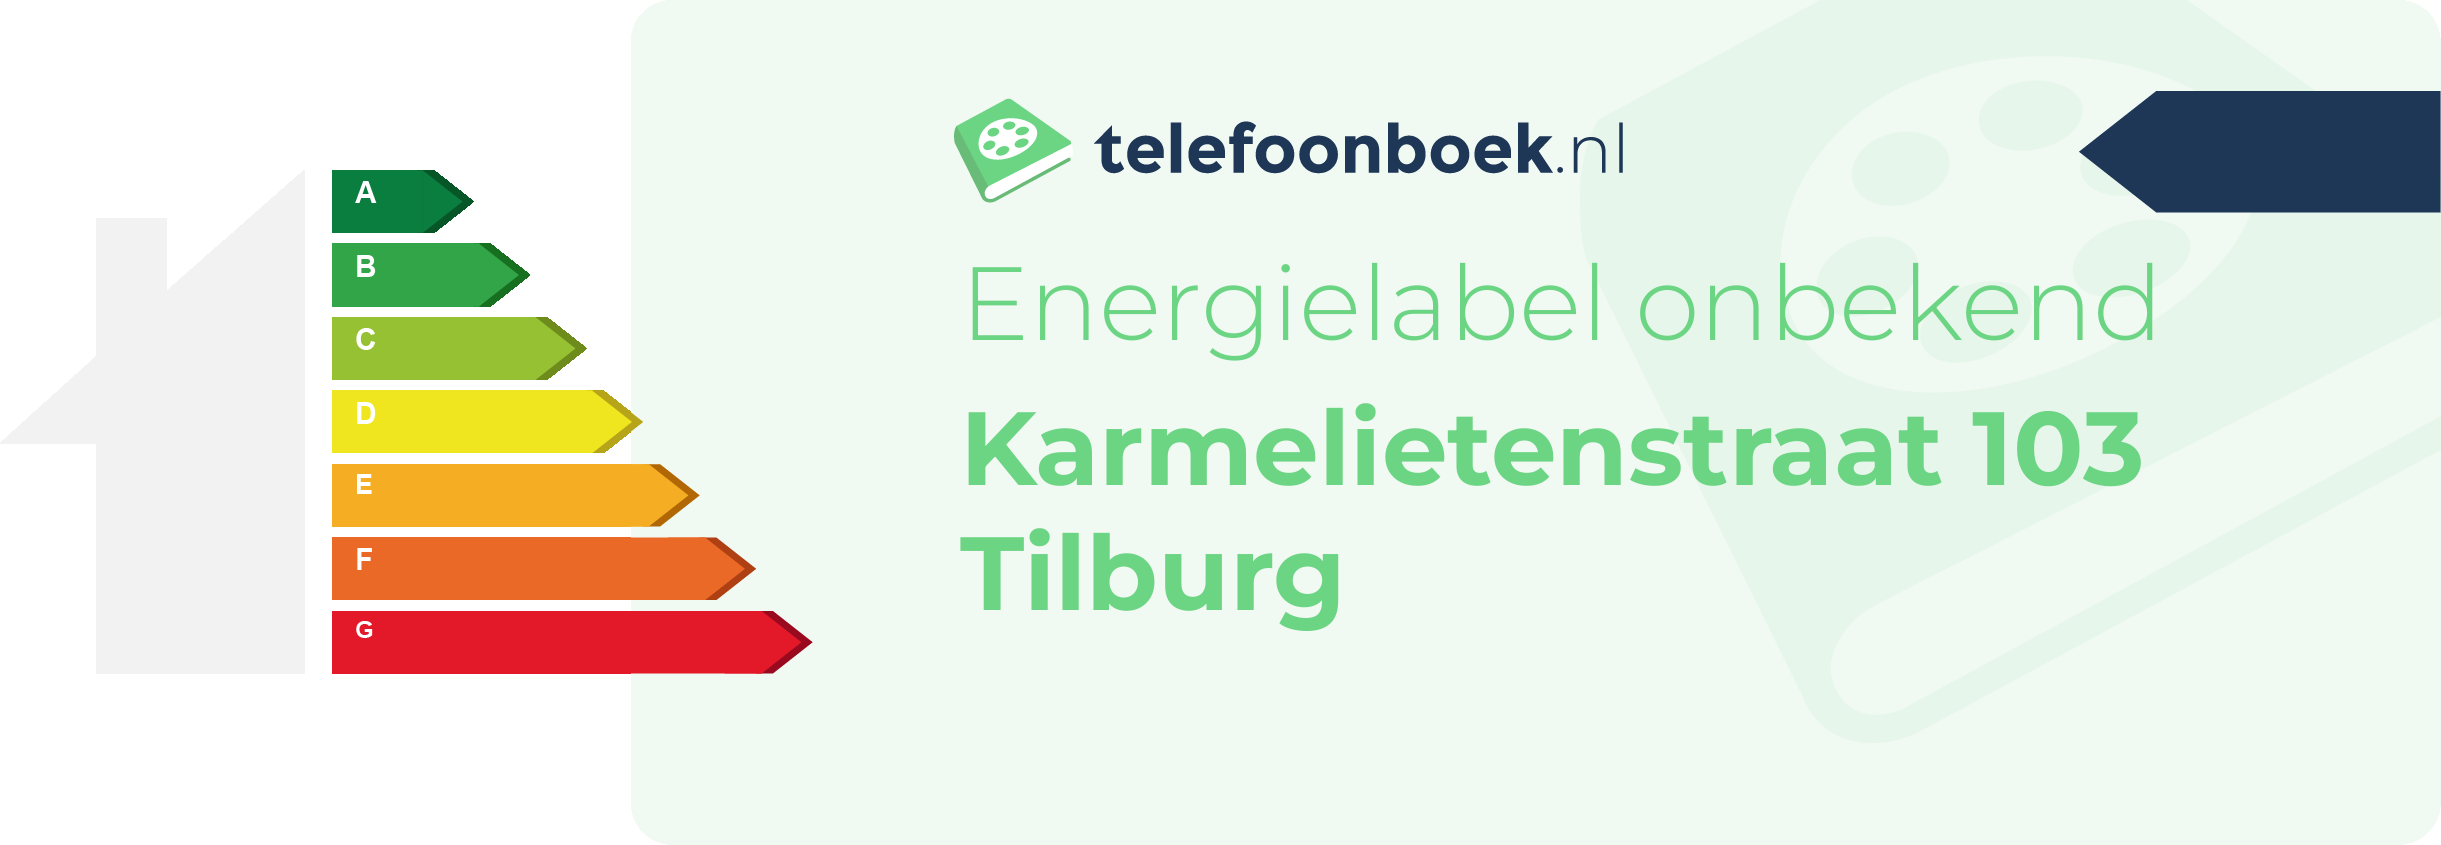 Energielabel Karmelietenstraat 103 Tilburg